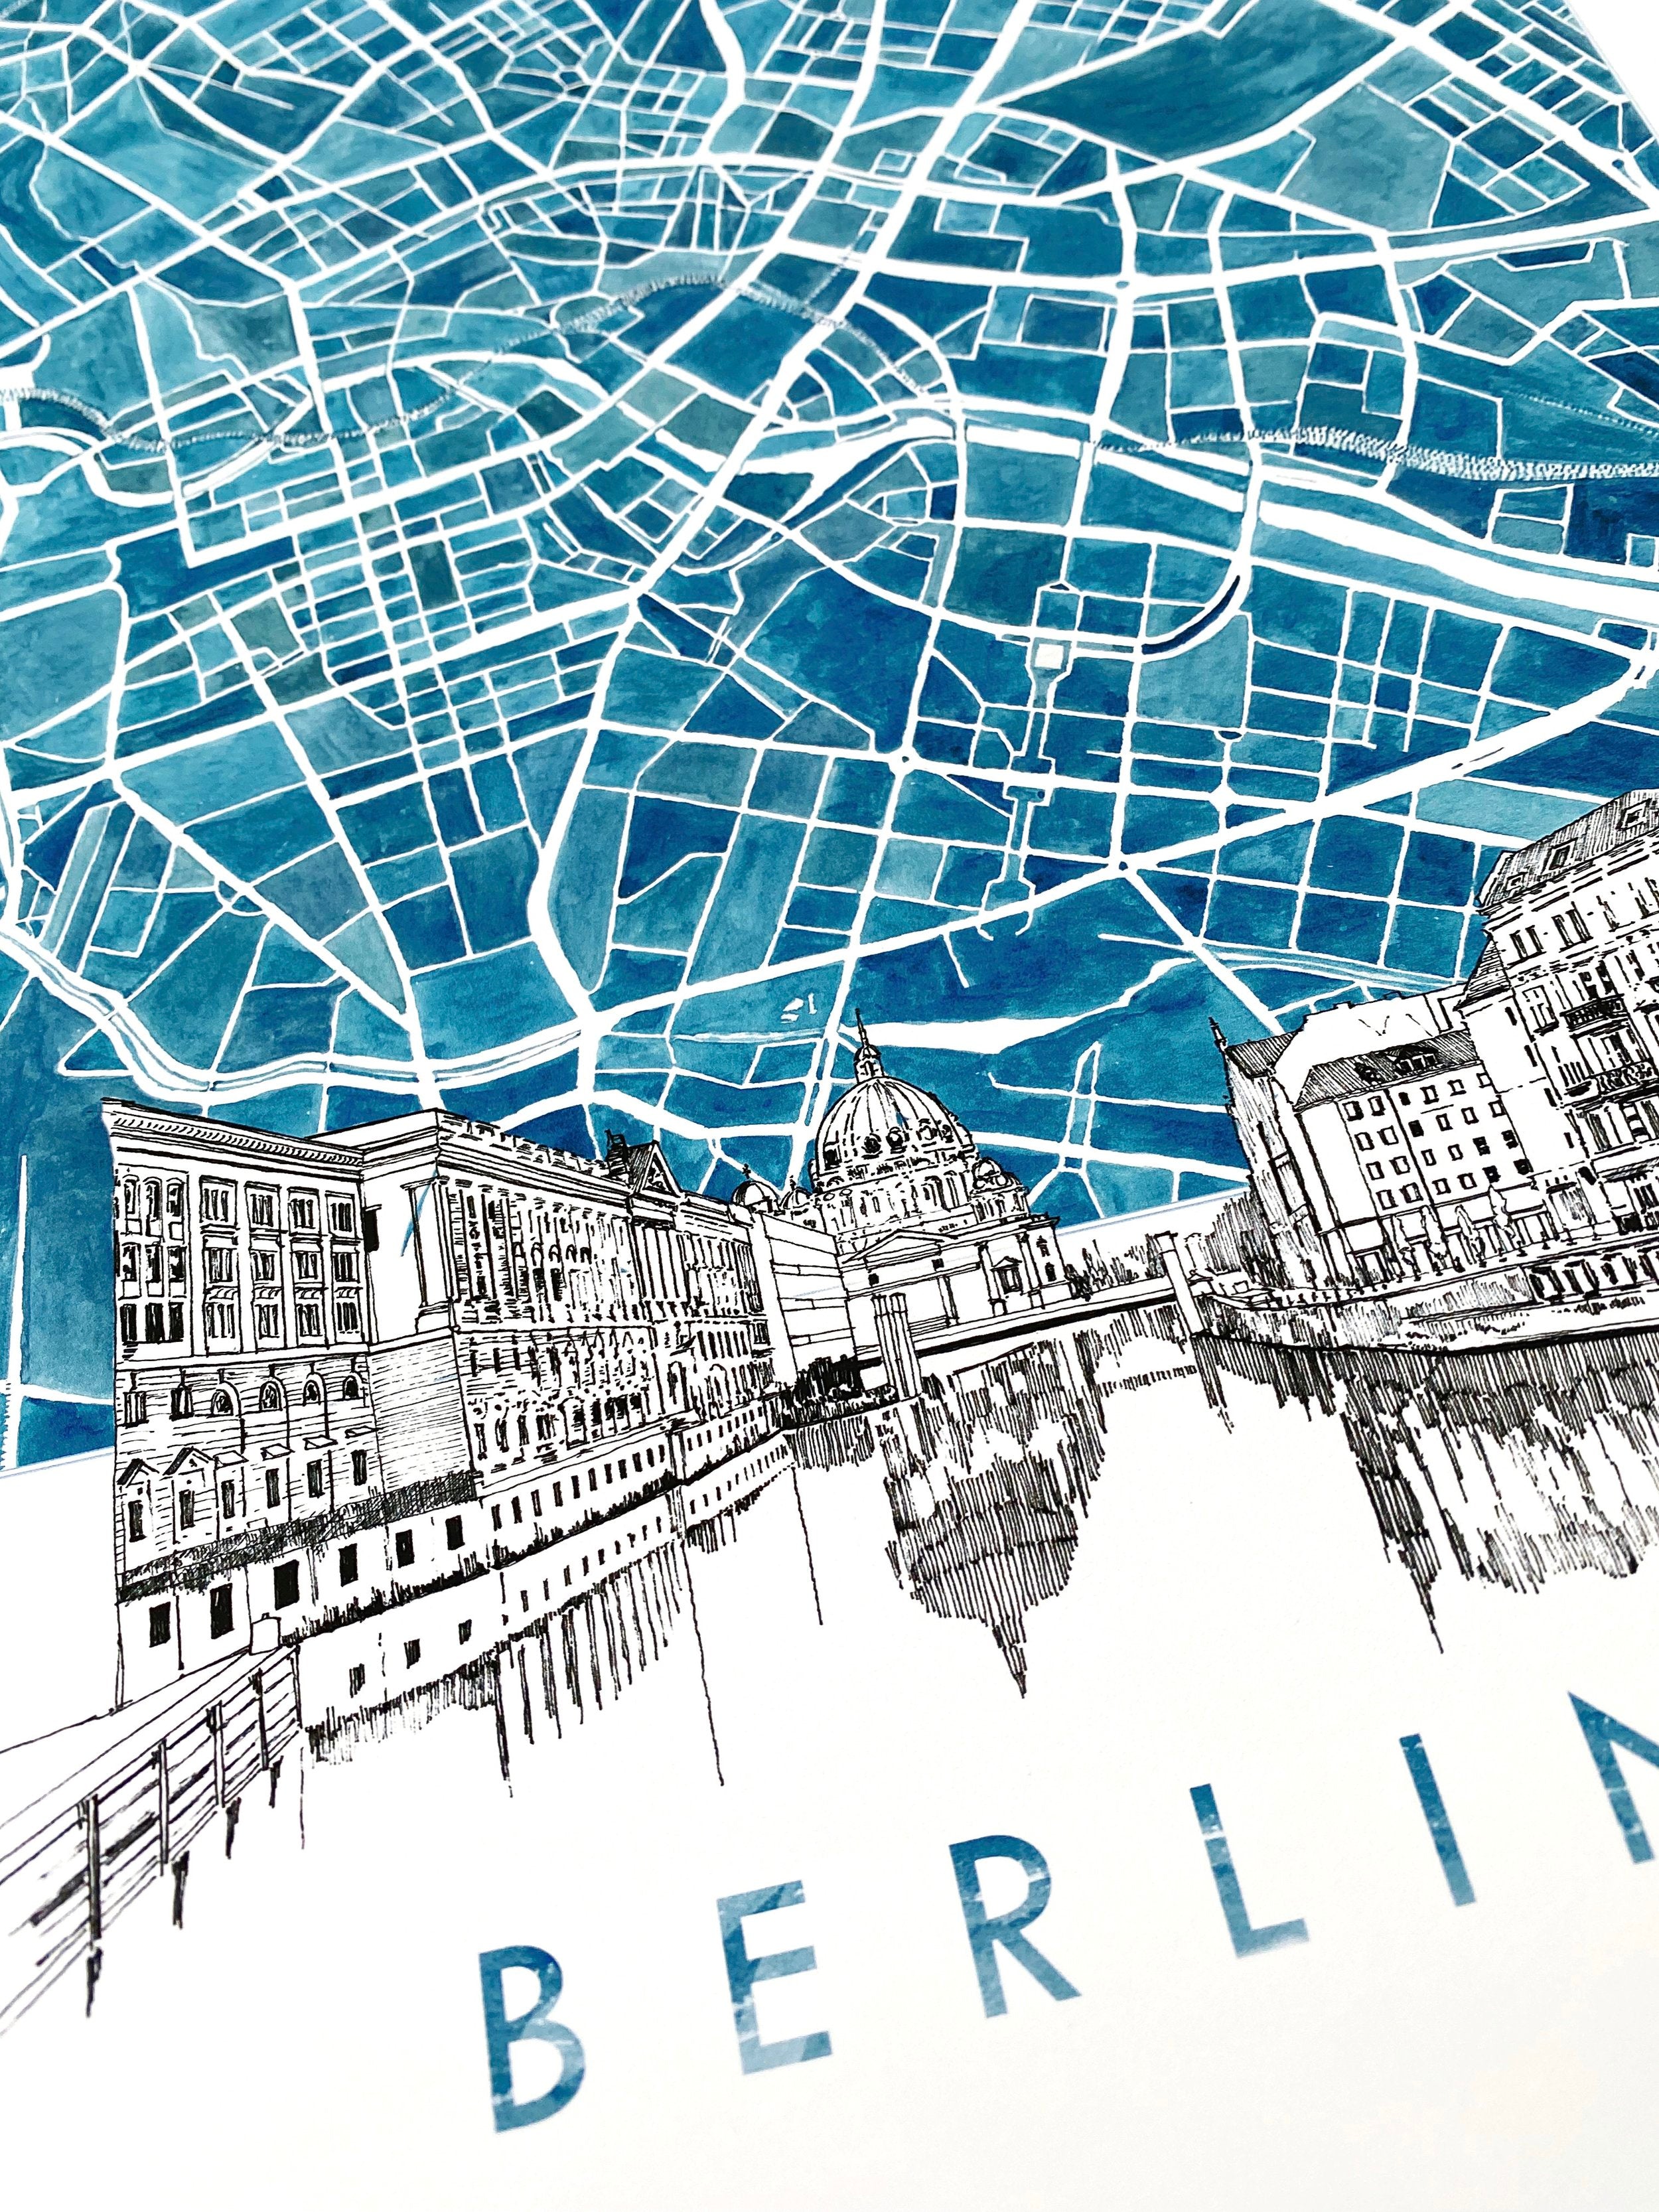 BERLIN Watercolor Map + Sketch: PRINT